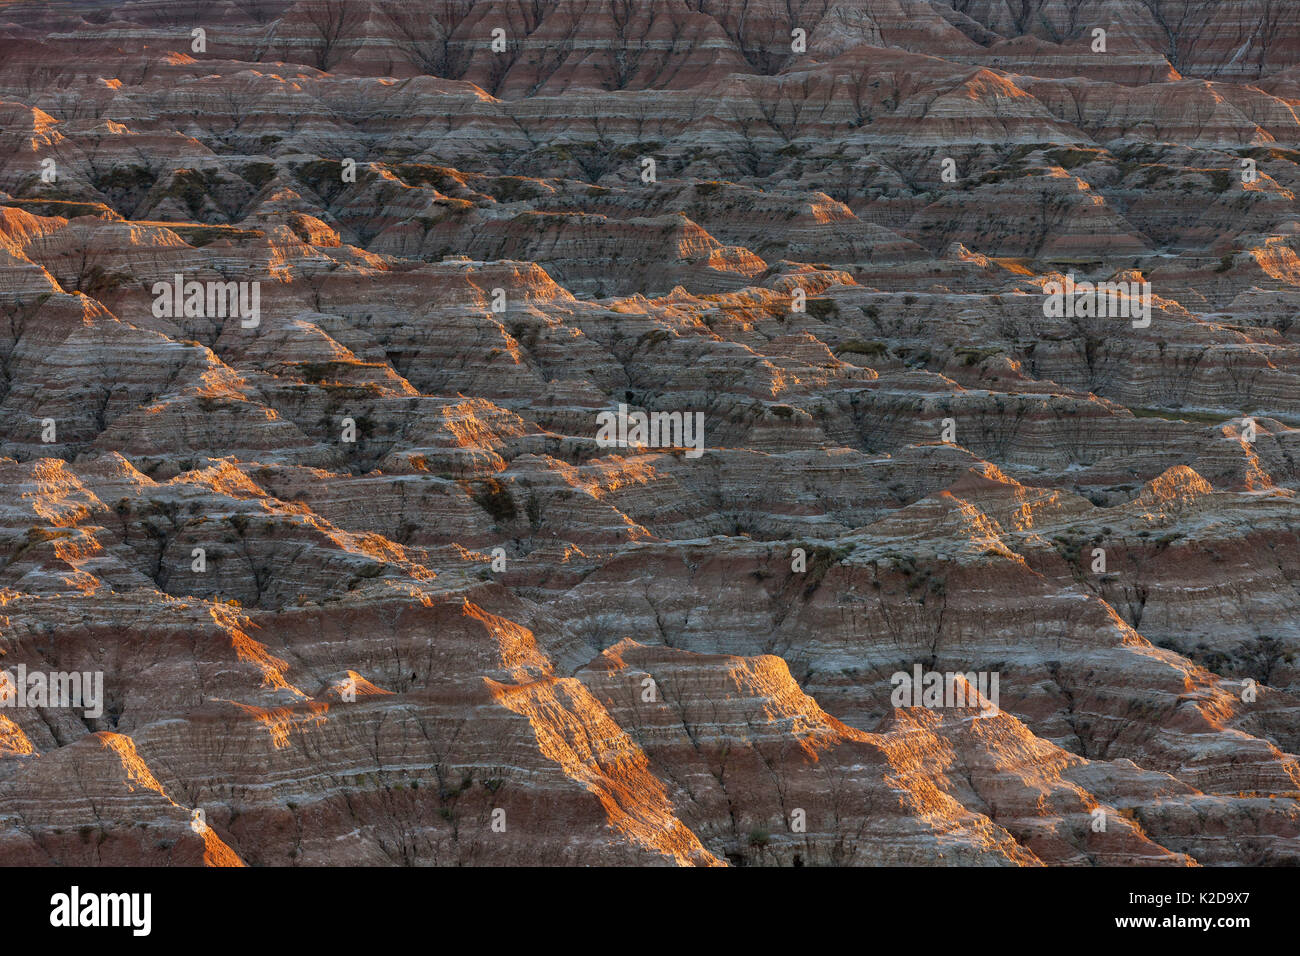 Paysage de grès érodées, stries et d'érosion, Badlands National Park, South Dakota, USA Septembre 2014. Banque D'Images